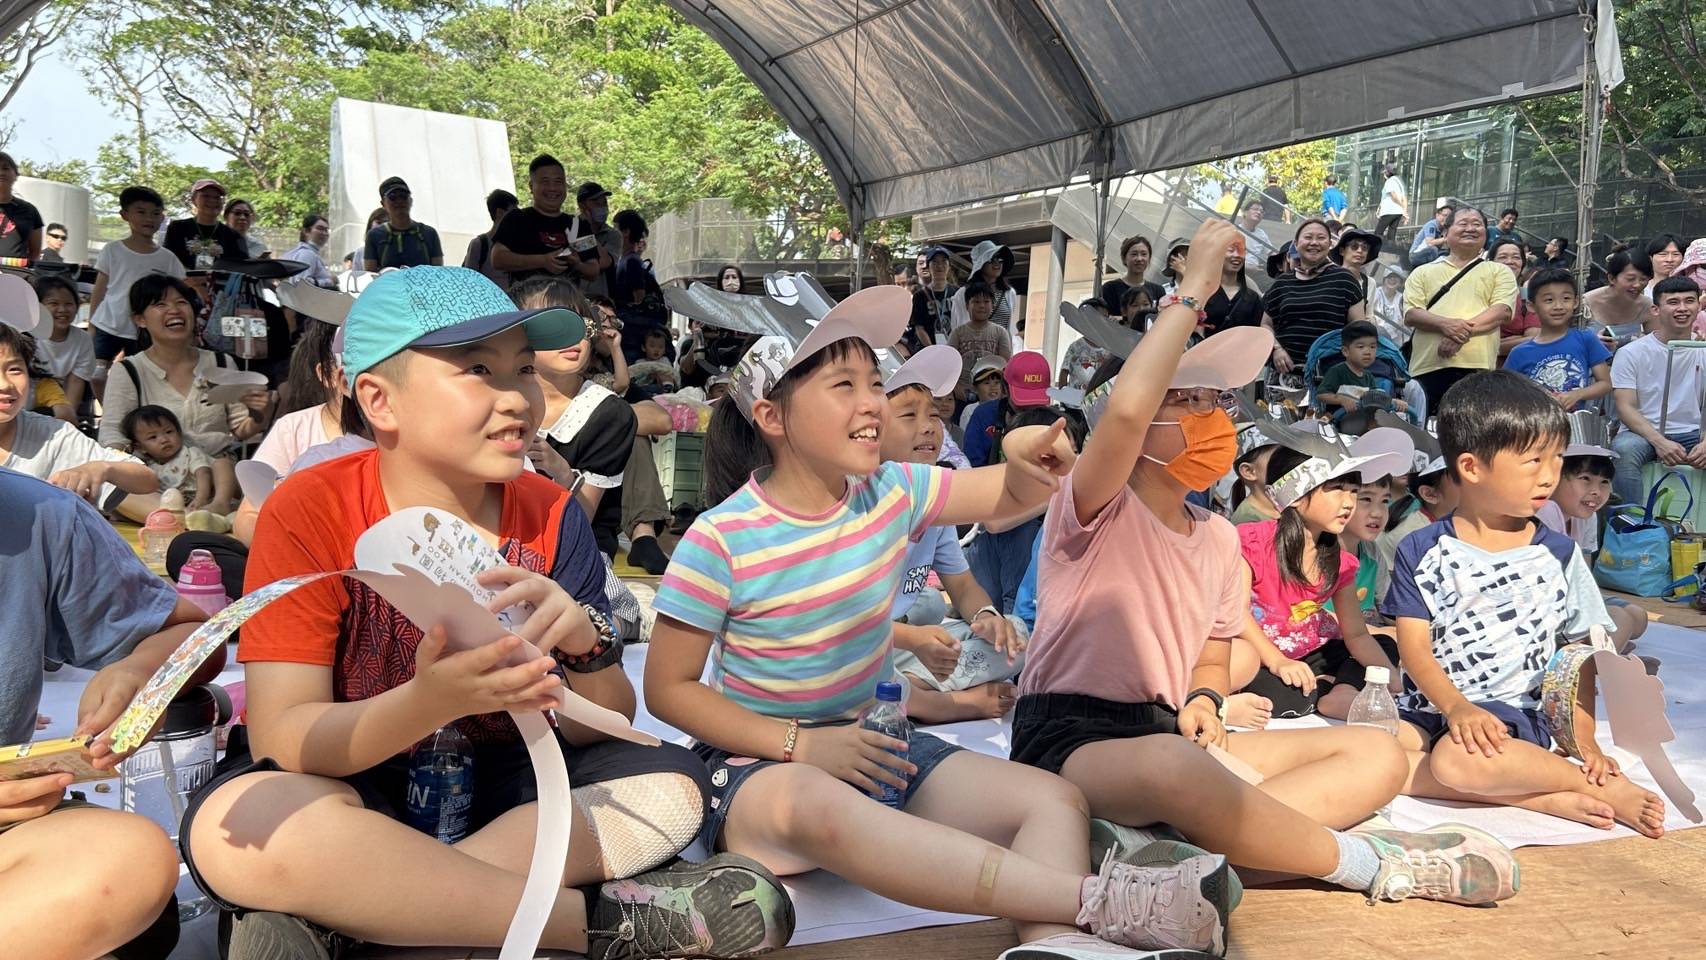 壽山動物園免費入園最後一天 高雄兒童節連假遊潮湧入。〈圖/記者翻攝〉